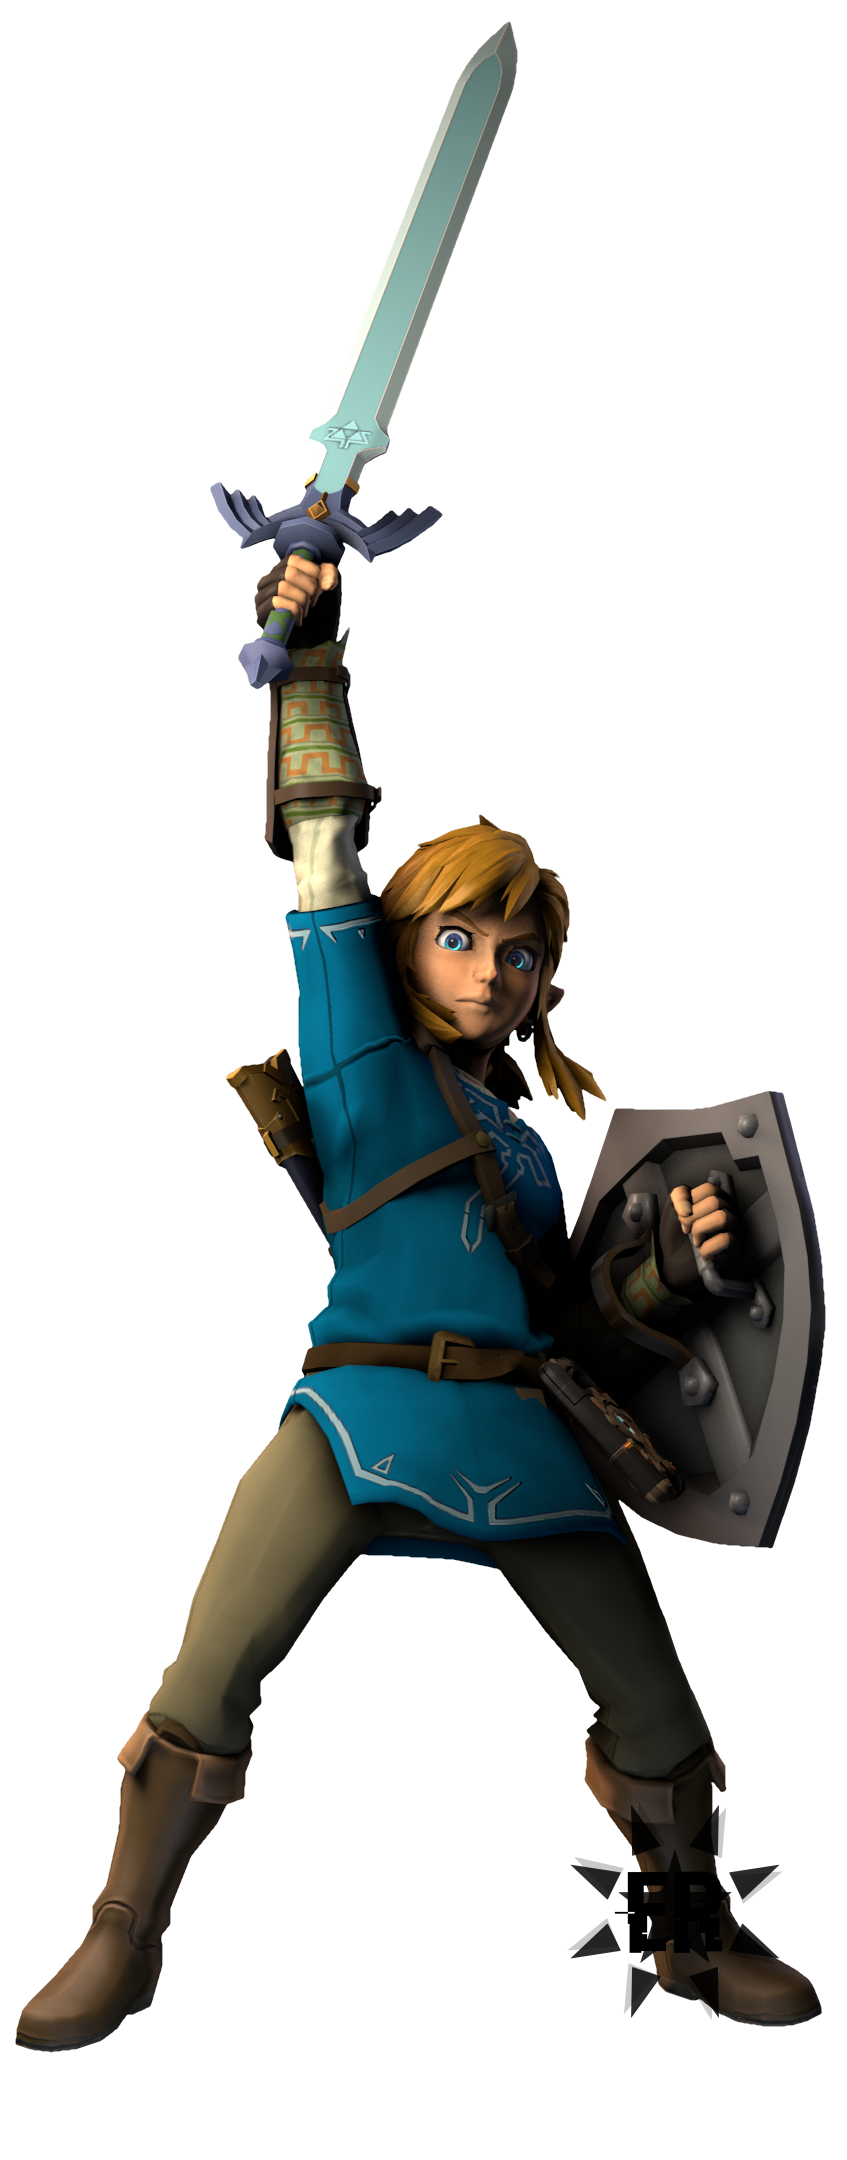 Link ( The Legend of Zelda) Render V5 by RayLuisHDX2 on DeviantArt